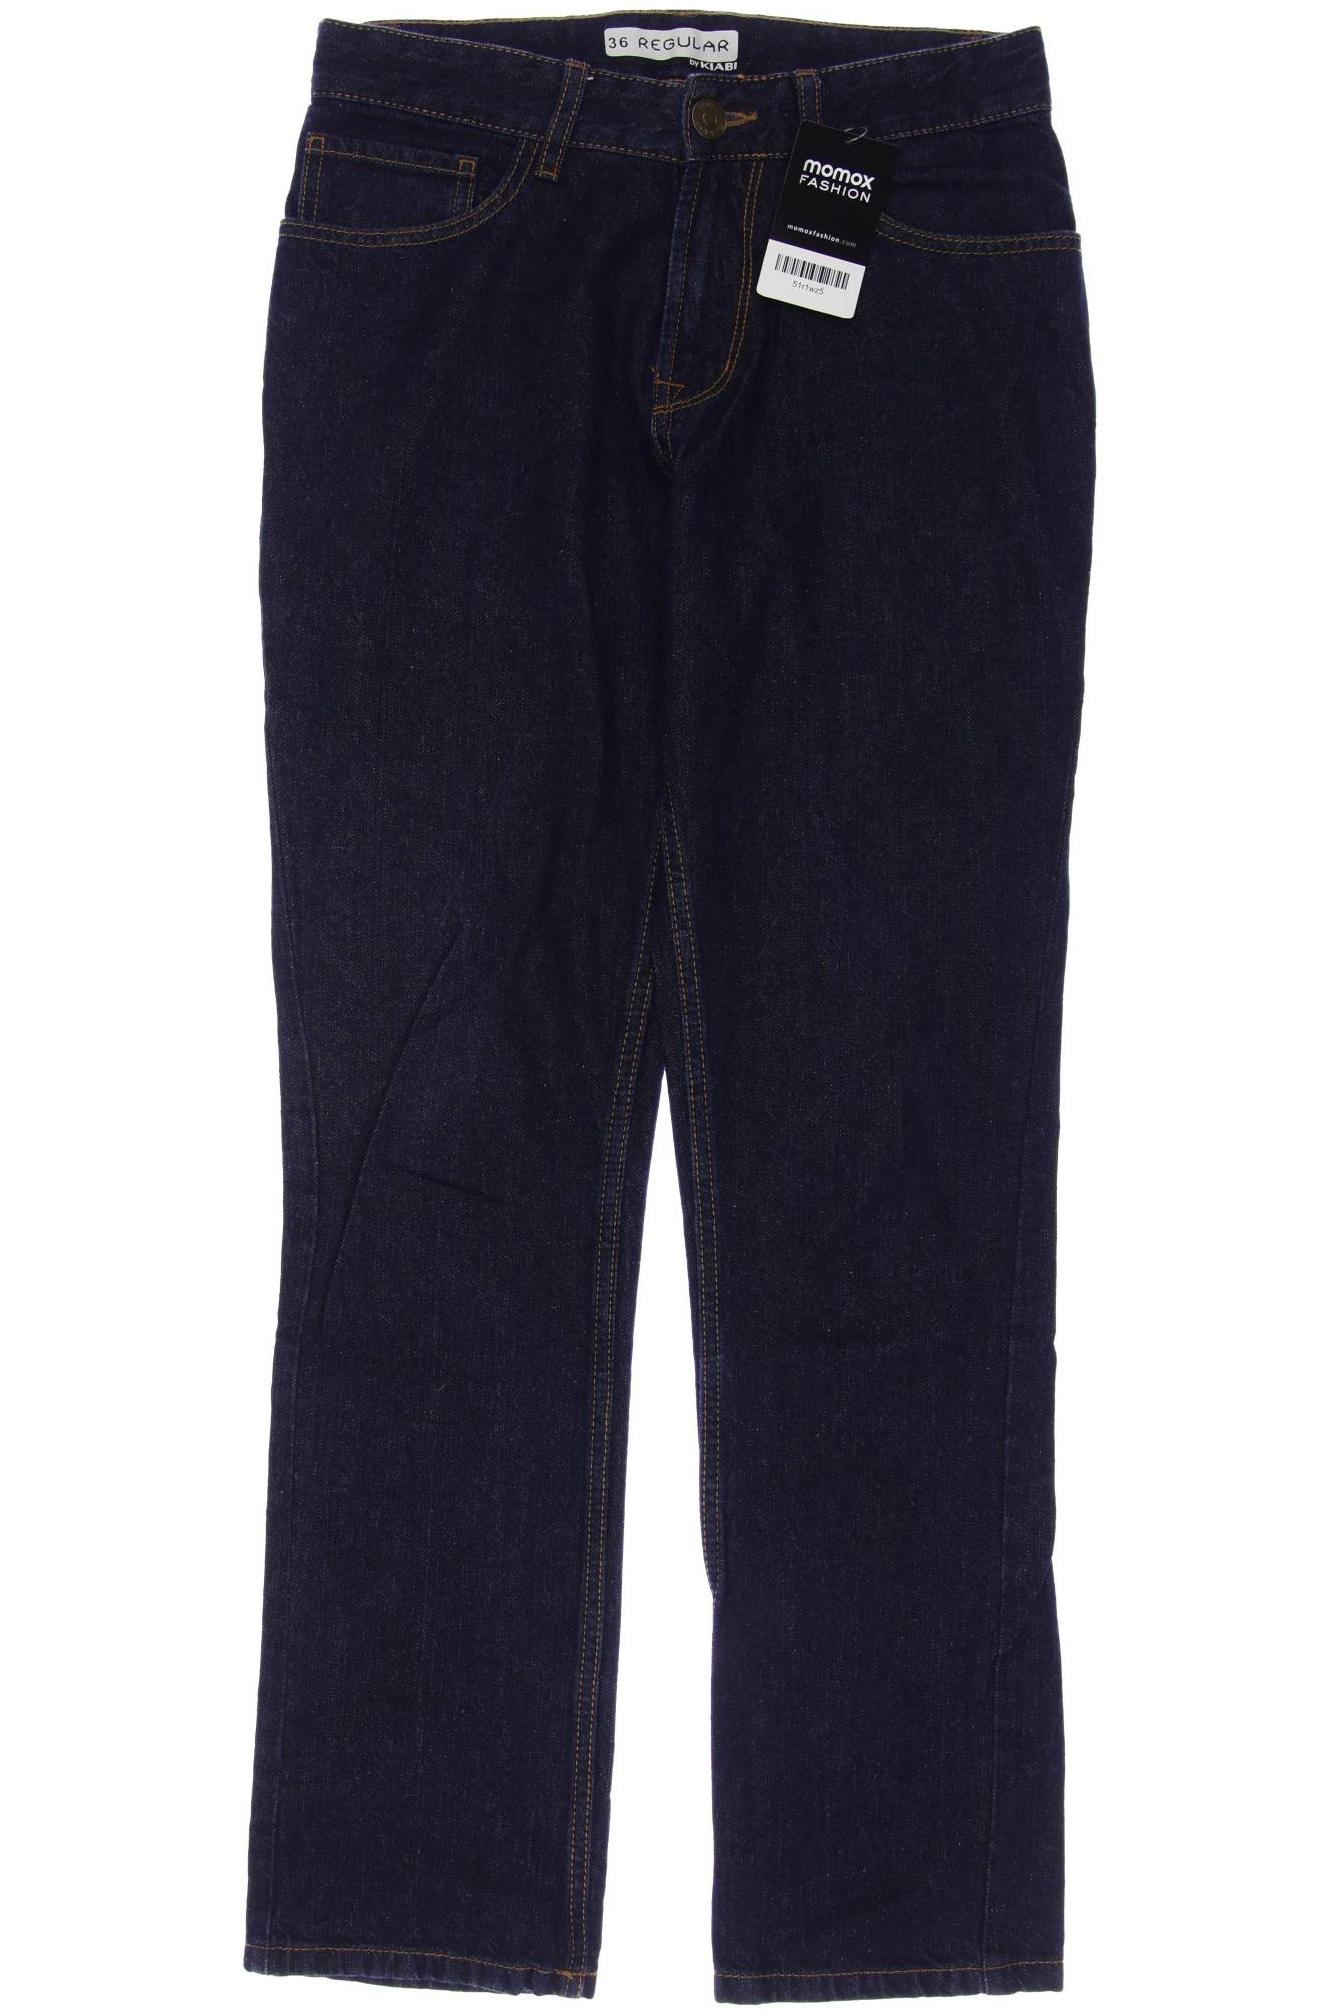 Kiabi Herren Jeans, marineblau, Gr. 36 von Kiabi